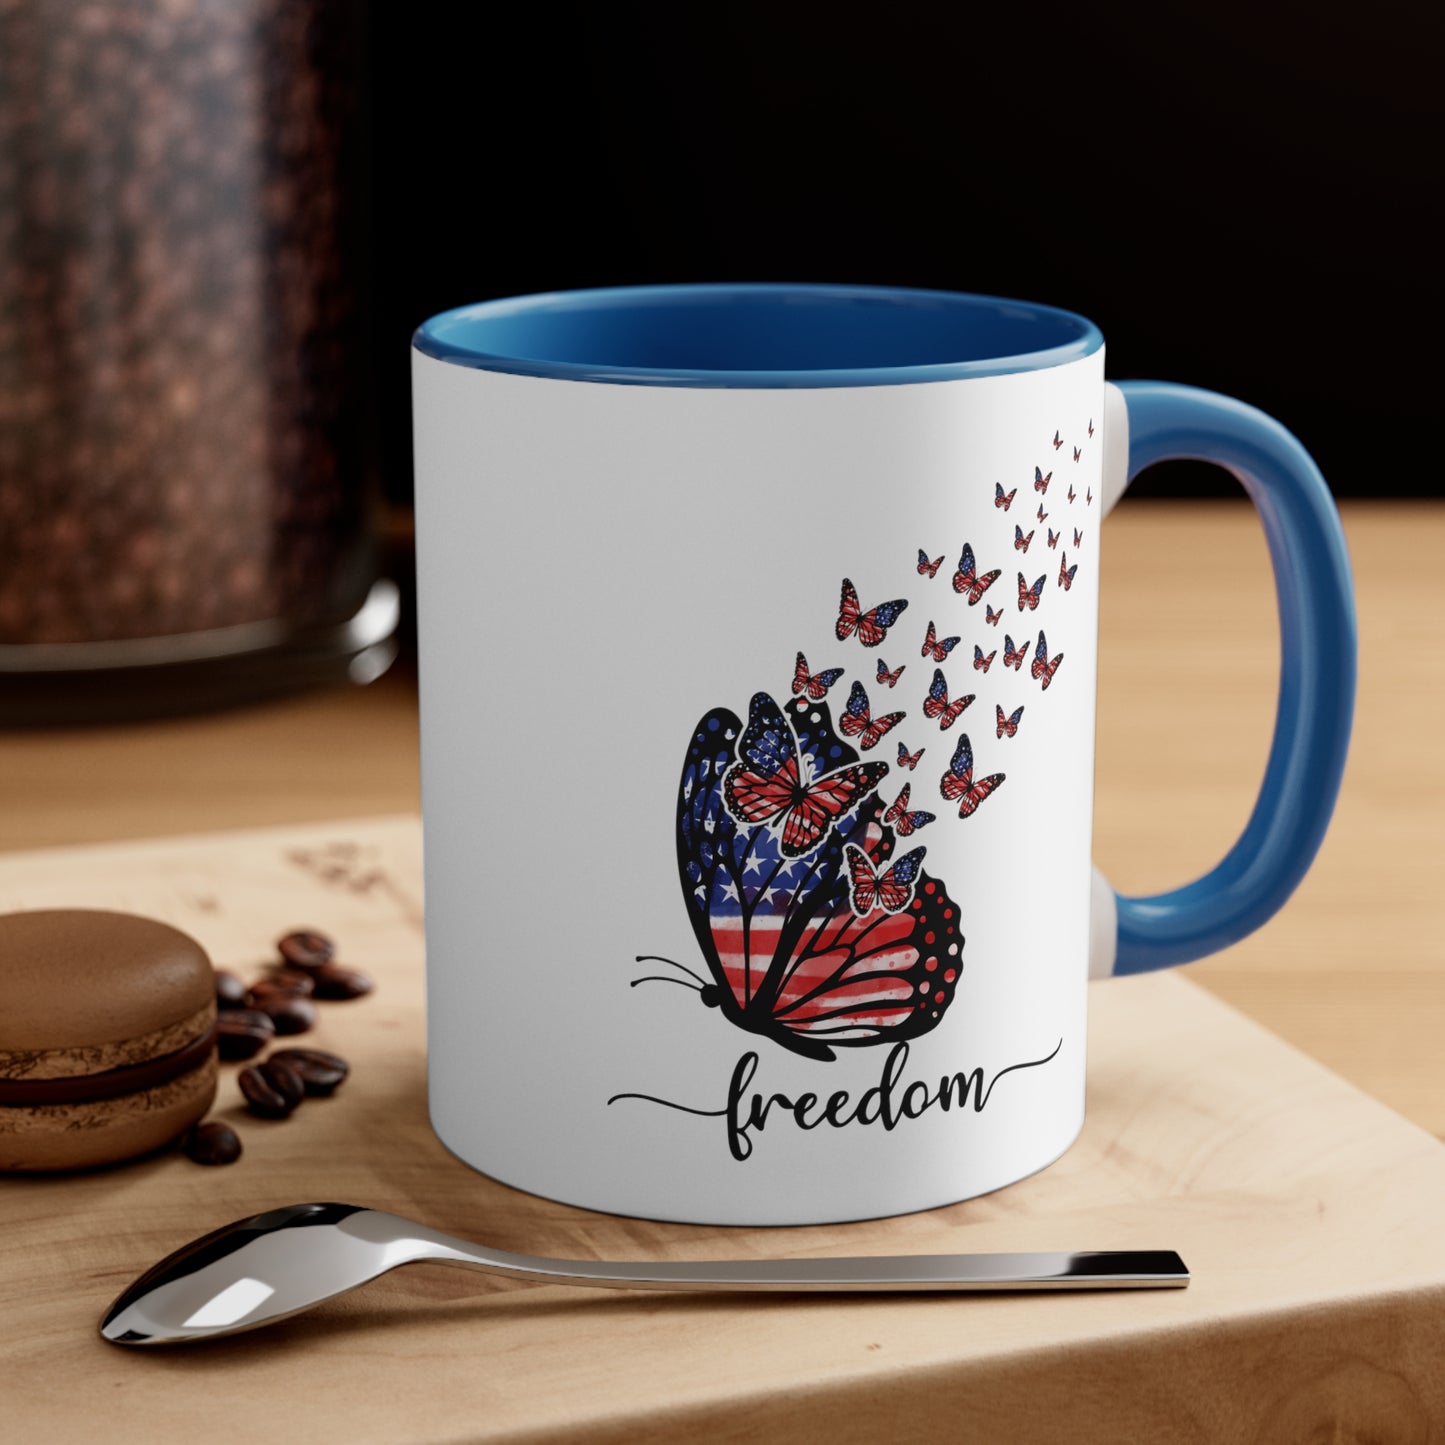 Freedom Accent Coffee Mug, 11oz